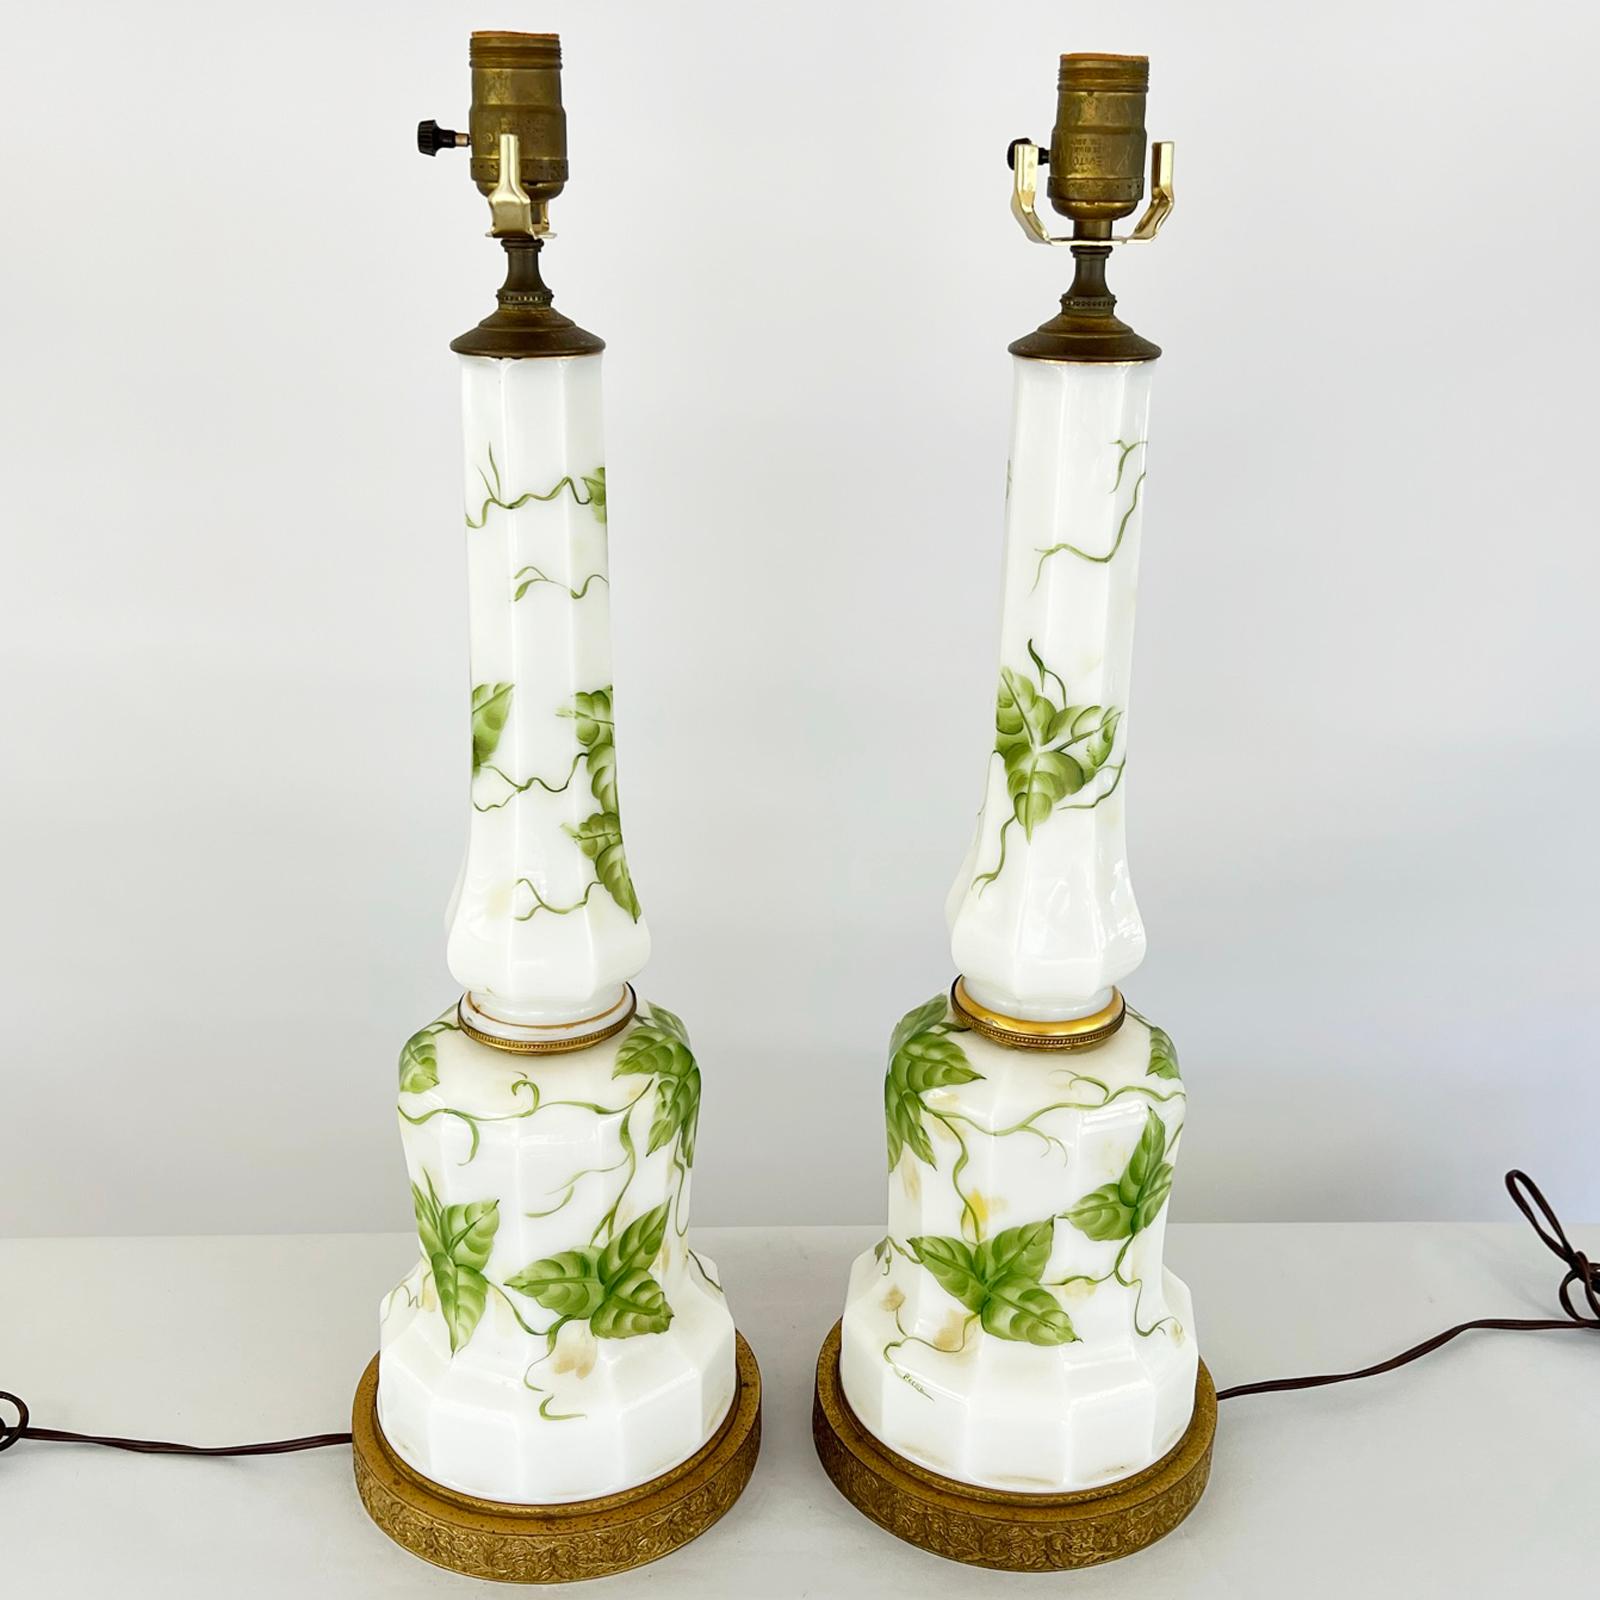 Paar säulenförmige Tischlampen im Empire-Stil, aus Milchglas. Jede runde, facettierte Säule ist mit Efeuranken handbemalt. Lampen auf runden, durchbrochenen Metallsockeln. Gezeichnet, 